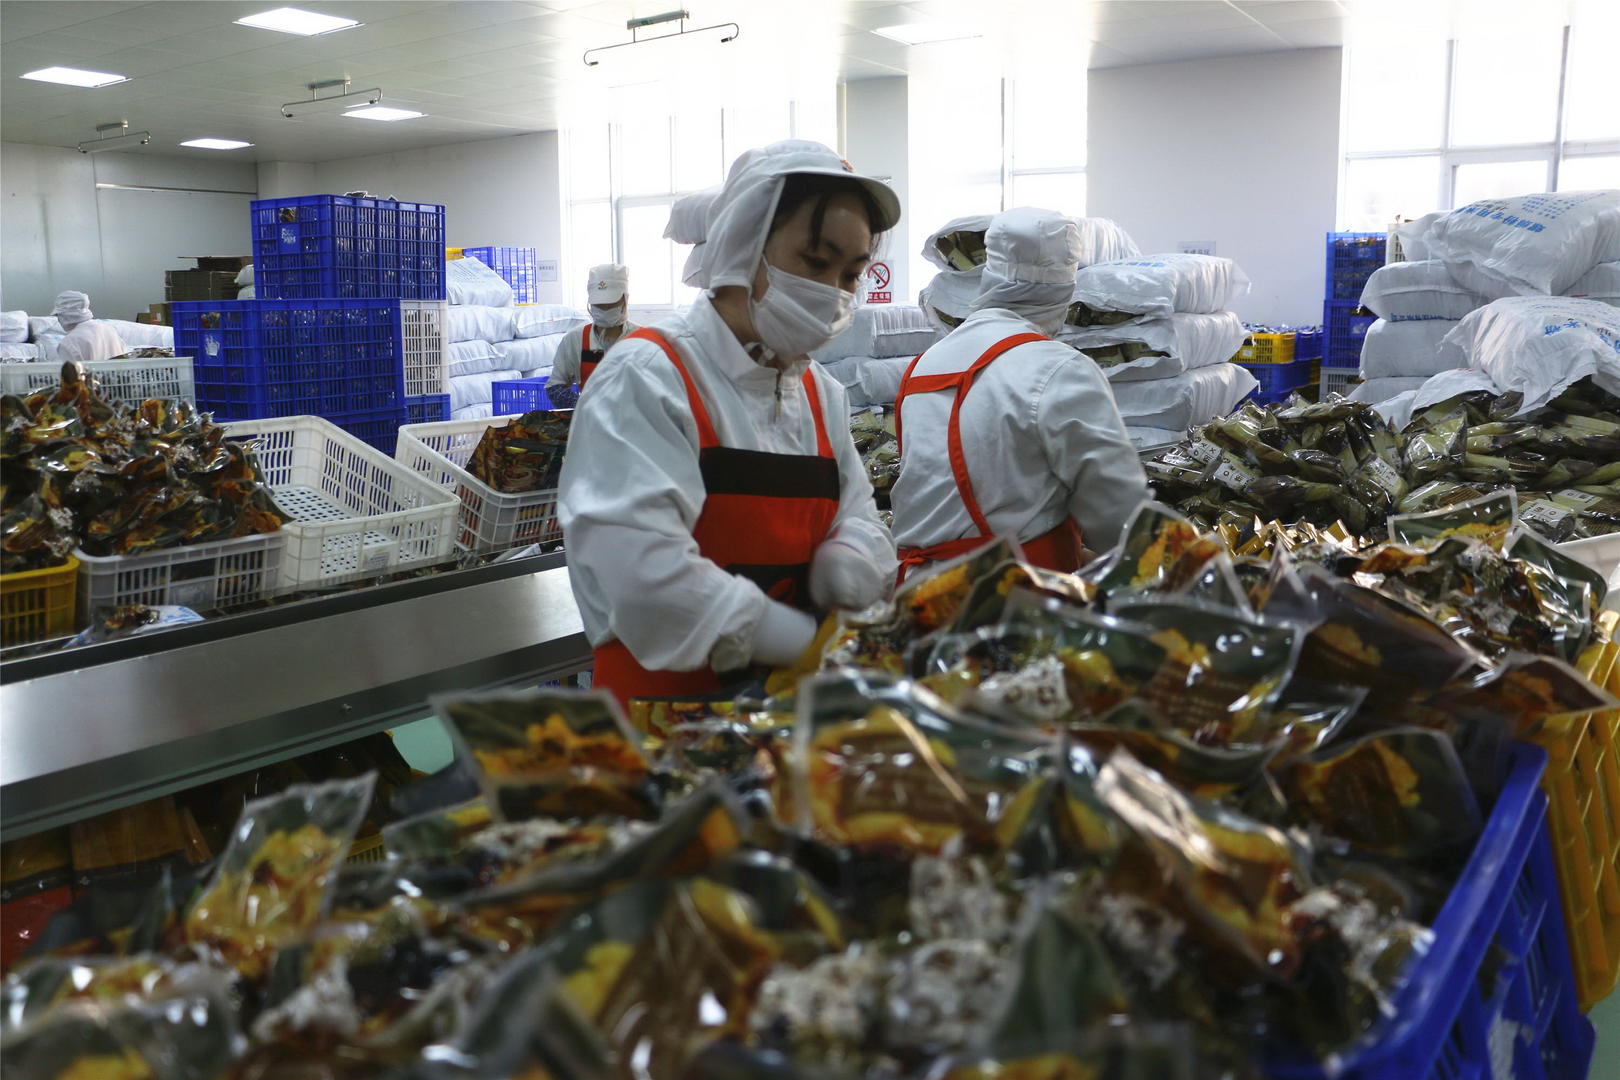 柳州某家螺蛳粉生产企业，工人正忙着包装、运输螺蛳粉。图据IC photo